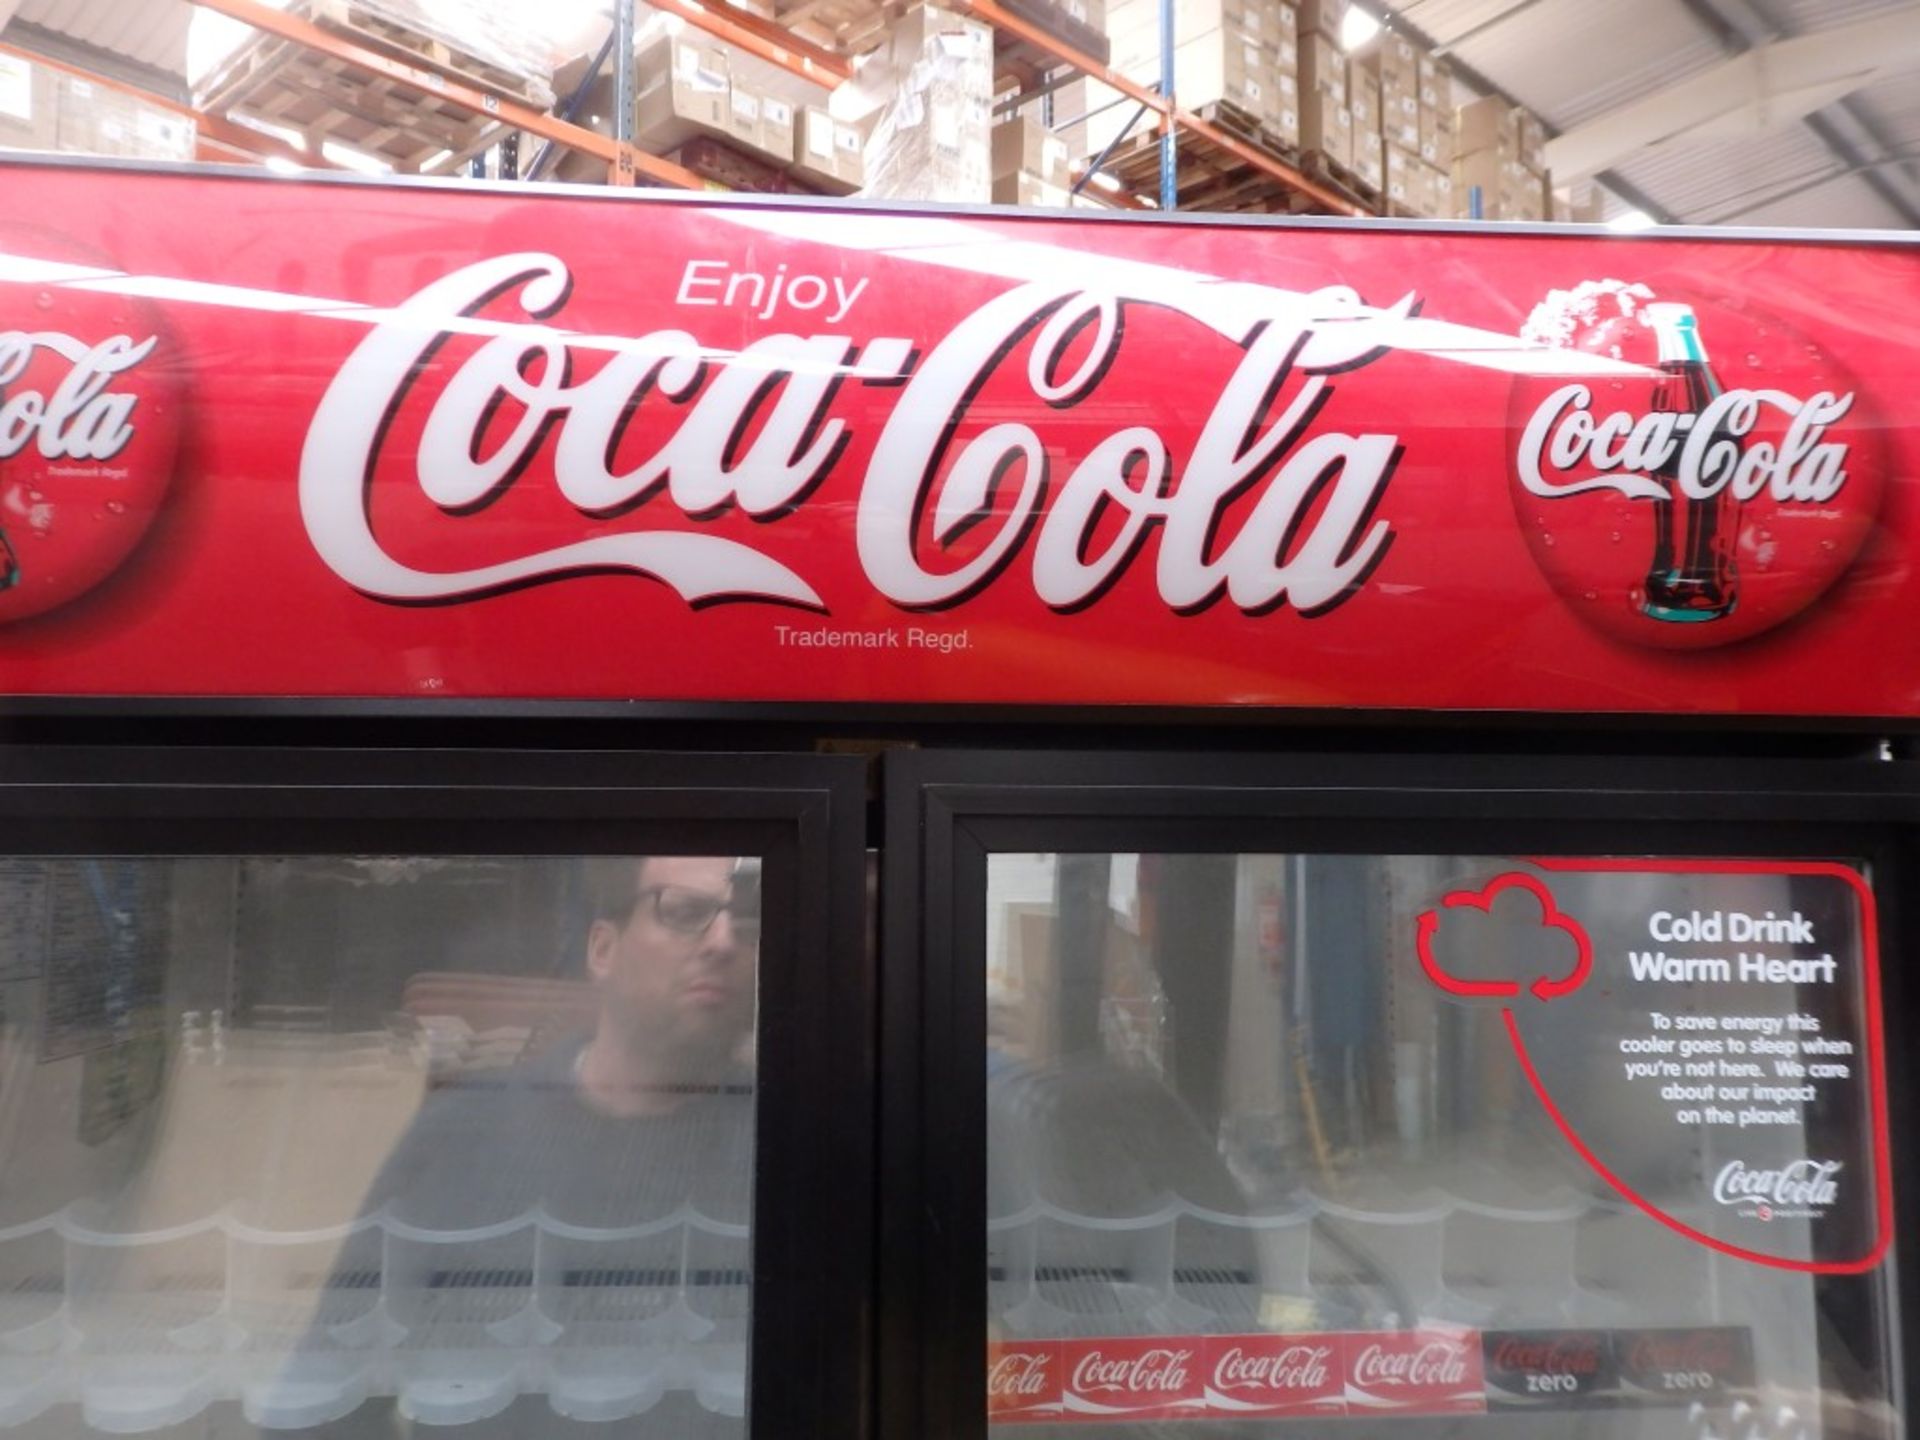 1 x Oversized 2-Door "Coca-Cola" Merchandiser Refrigerator - Model: TRUE GDM 35 - 991Ltr - Glass - Image 4 of 9